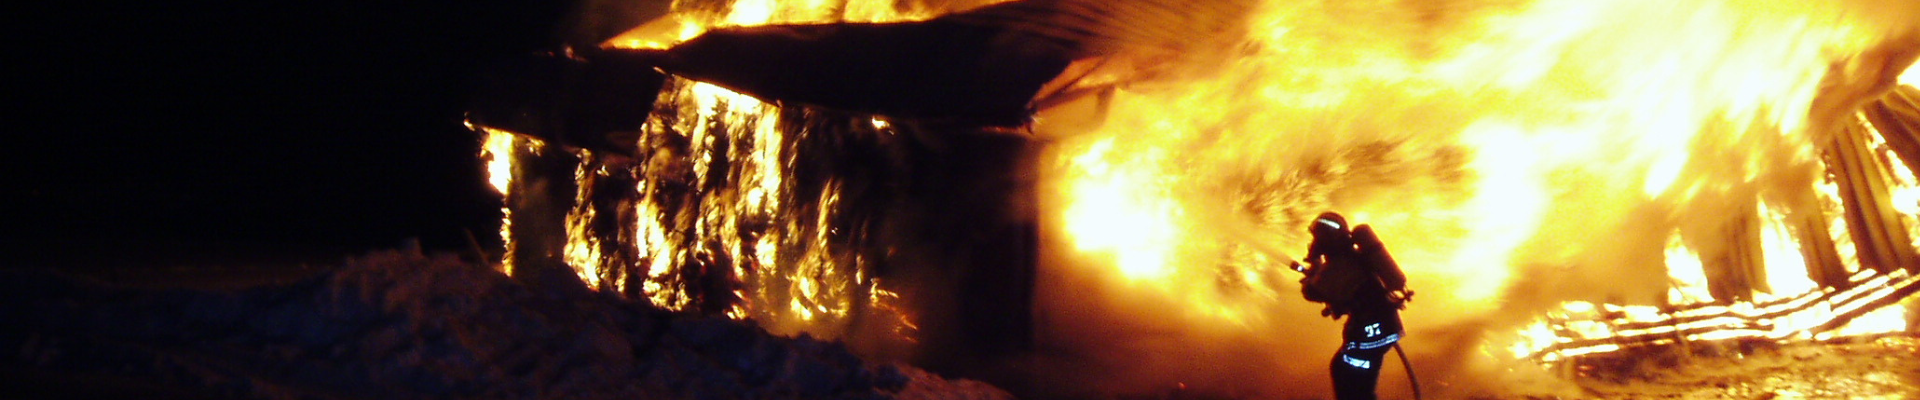 Pelastaja sammuttaa isoa tulipaloa. Vain pelastajan heijastimet ja siluetti erottuvat suurien lieskojen edessä.